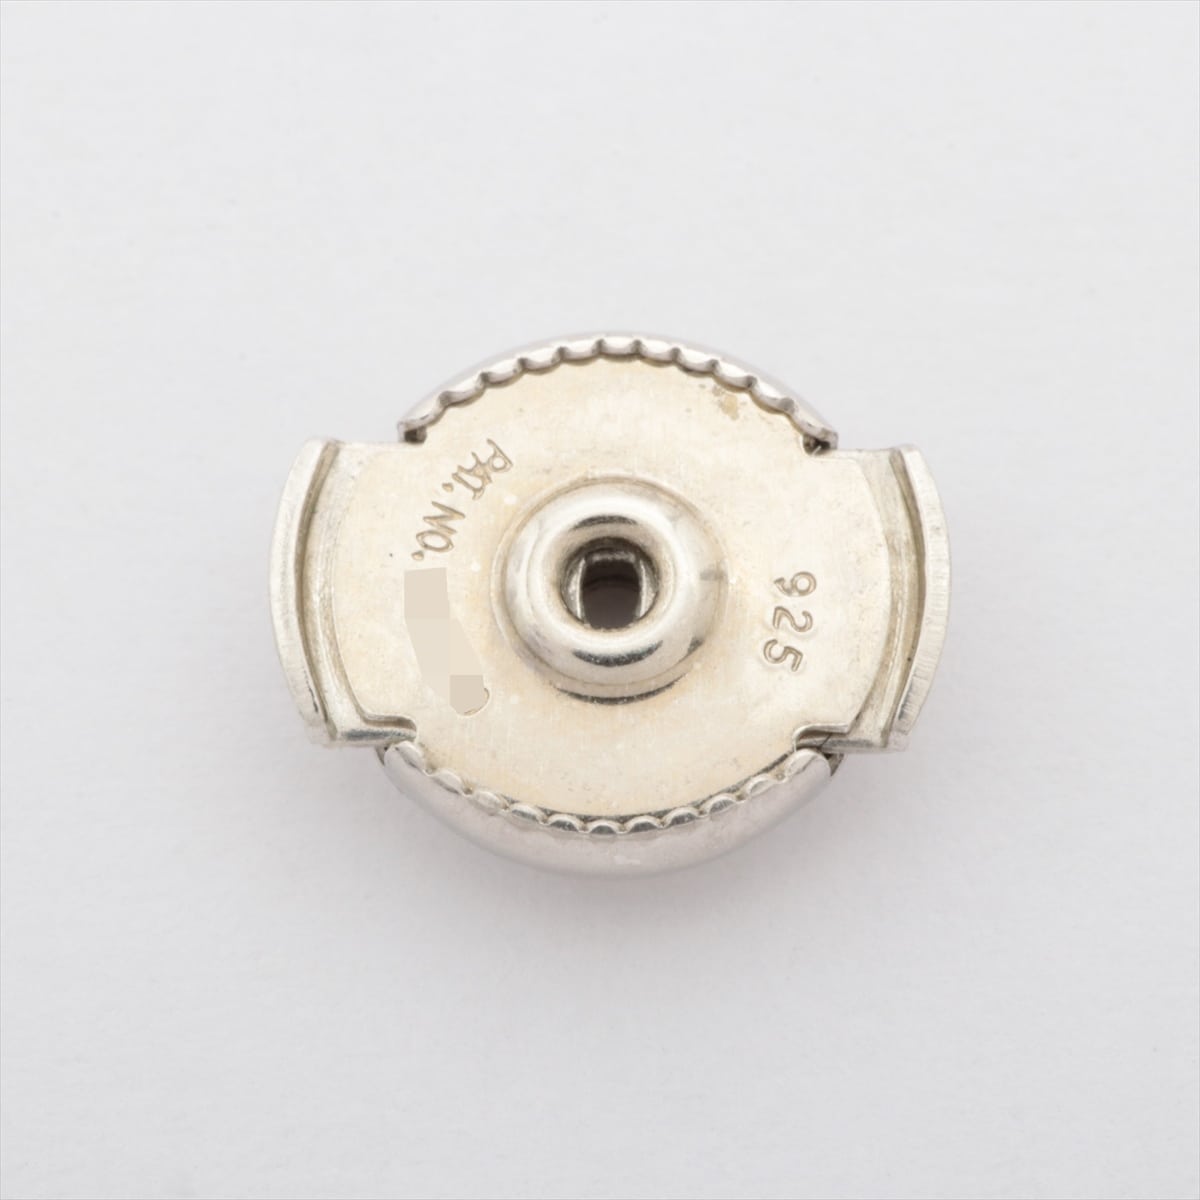 Hermès Loop Medium Piercing jewelry (for both ears) 925 11.1g Silver